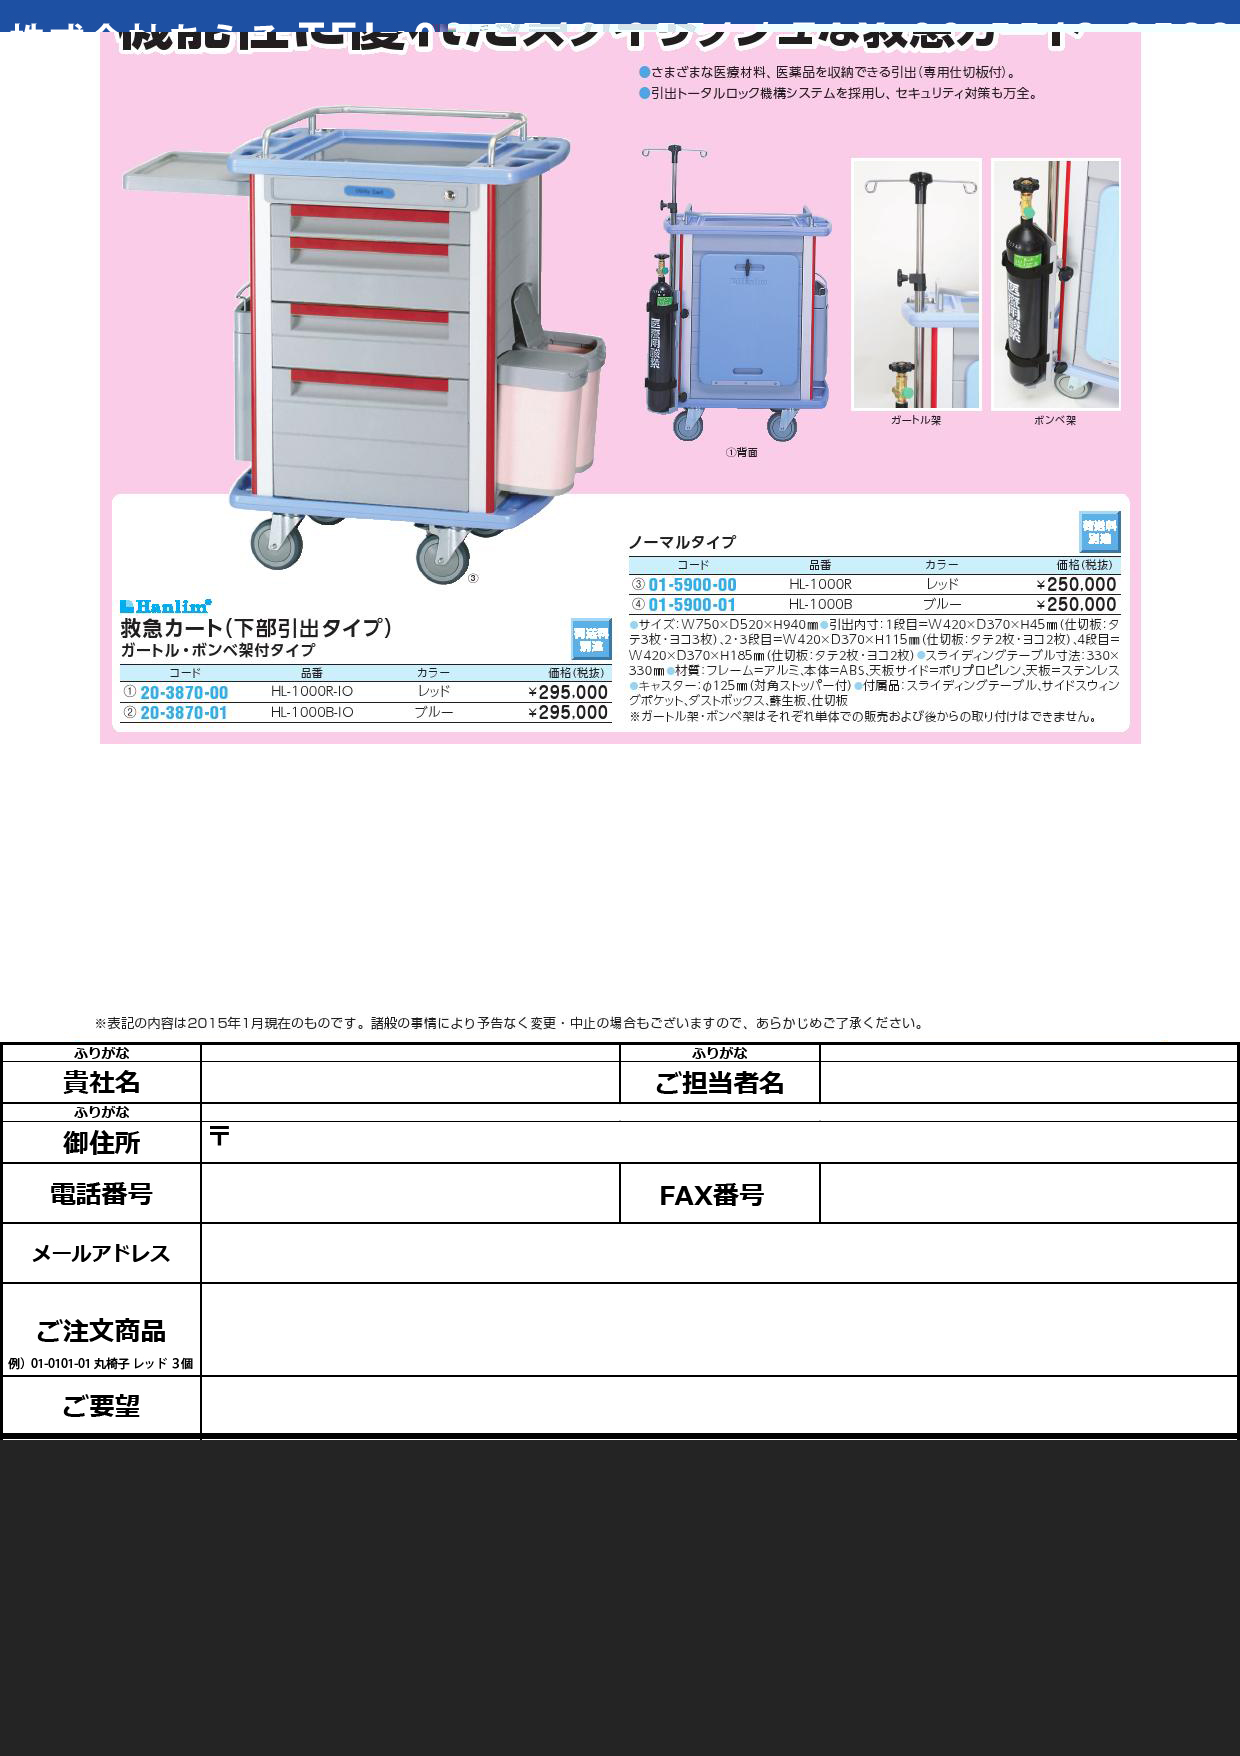 Ｈａｎｌｉｍ 救急カート ﾊﾝﾘﾑｷｭｳｷｭｳｶｰﾄ(01-5900-01)HL-1000B(ﾌﾞﾙｰ)【1台単位】【2015年カタログ商品】